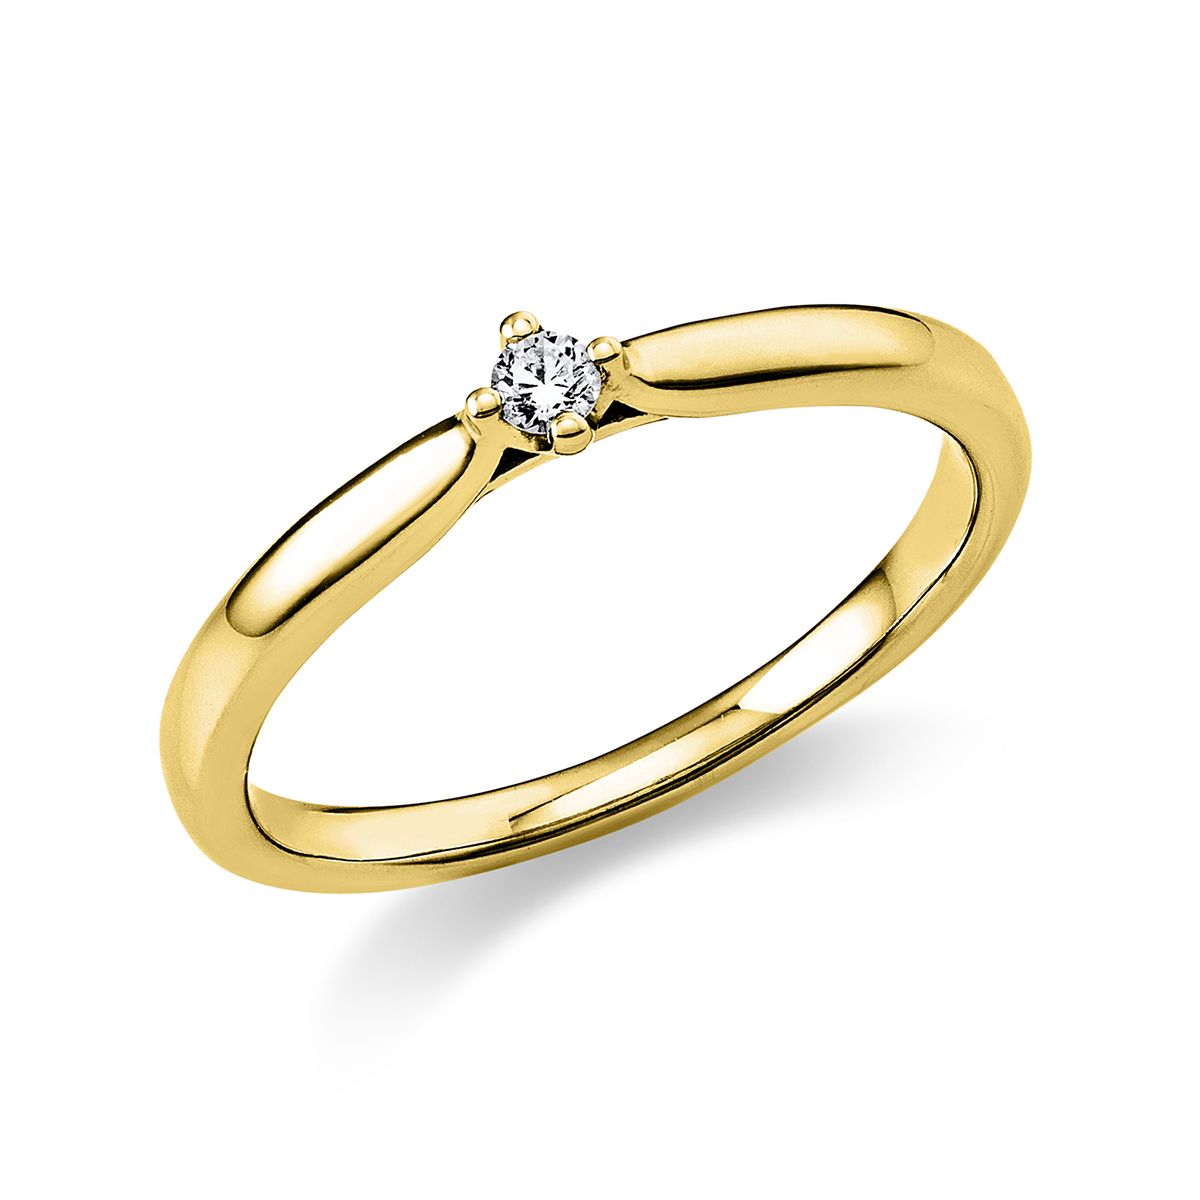 Solitär-Ring 4-Griff-Fassung 585/14K Gelbgold, Diamant 0.05 ct.